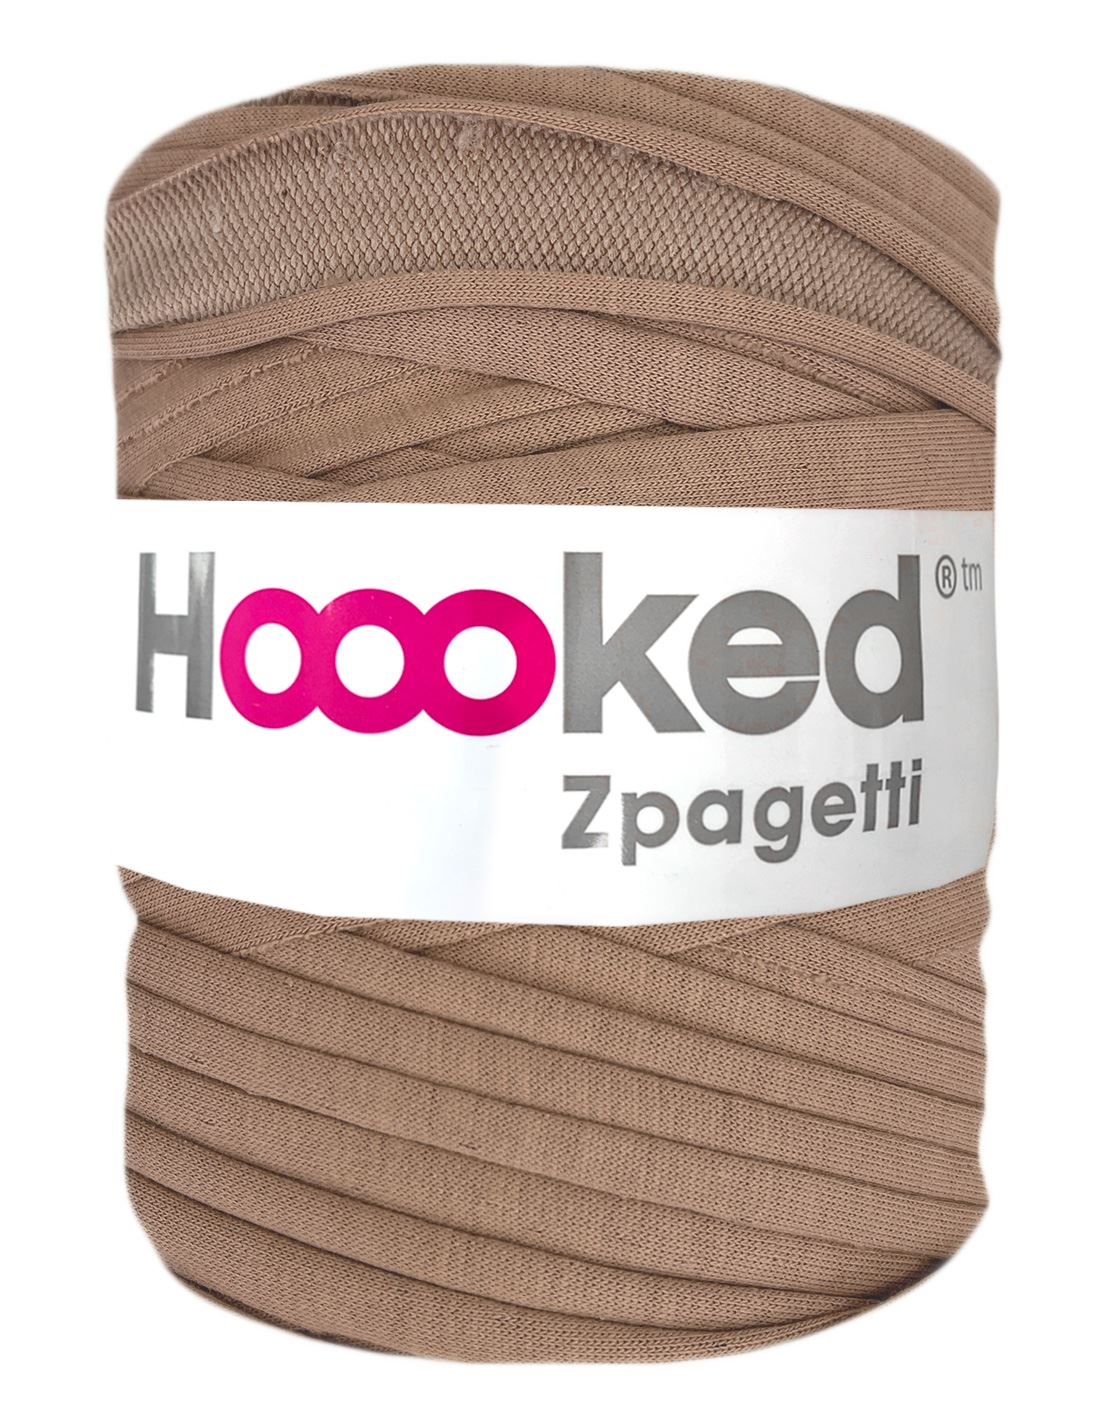 Dark latte t-shirt yarn by Hoooked Zpagetti (100-120m)